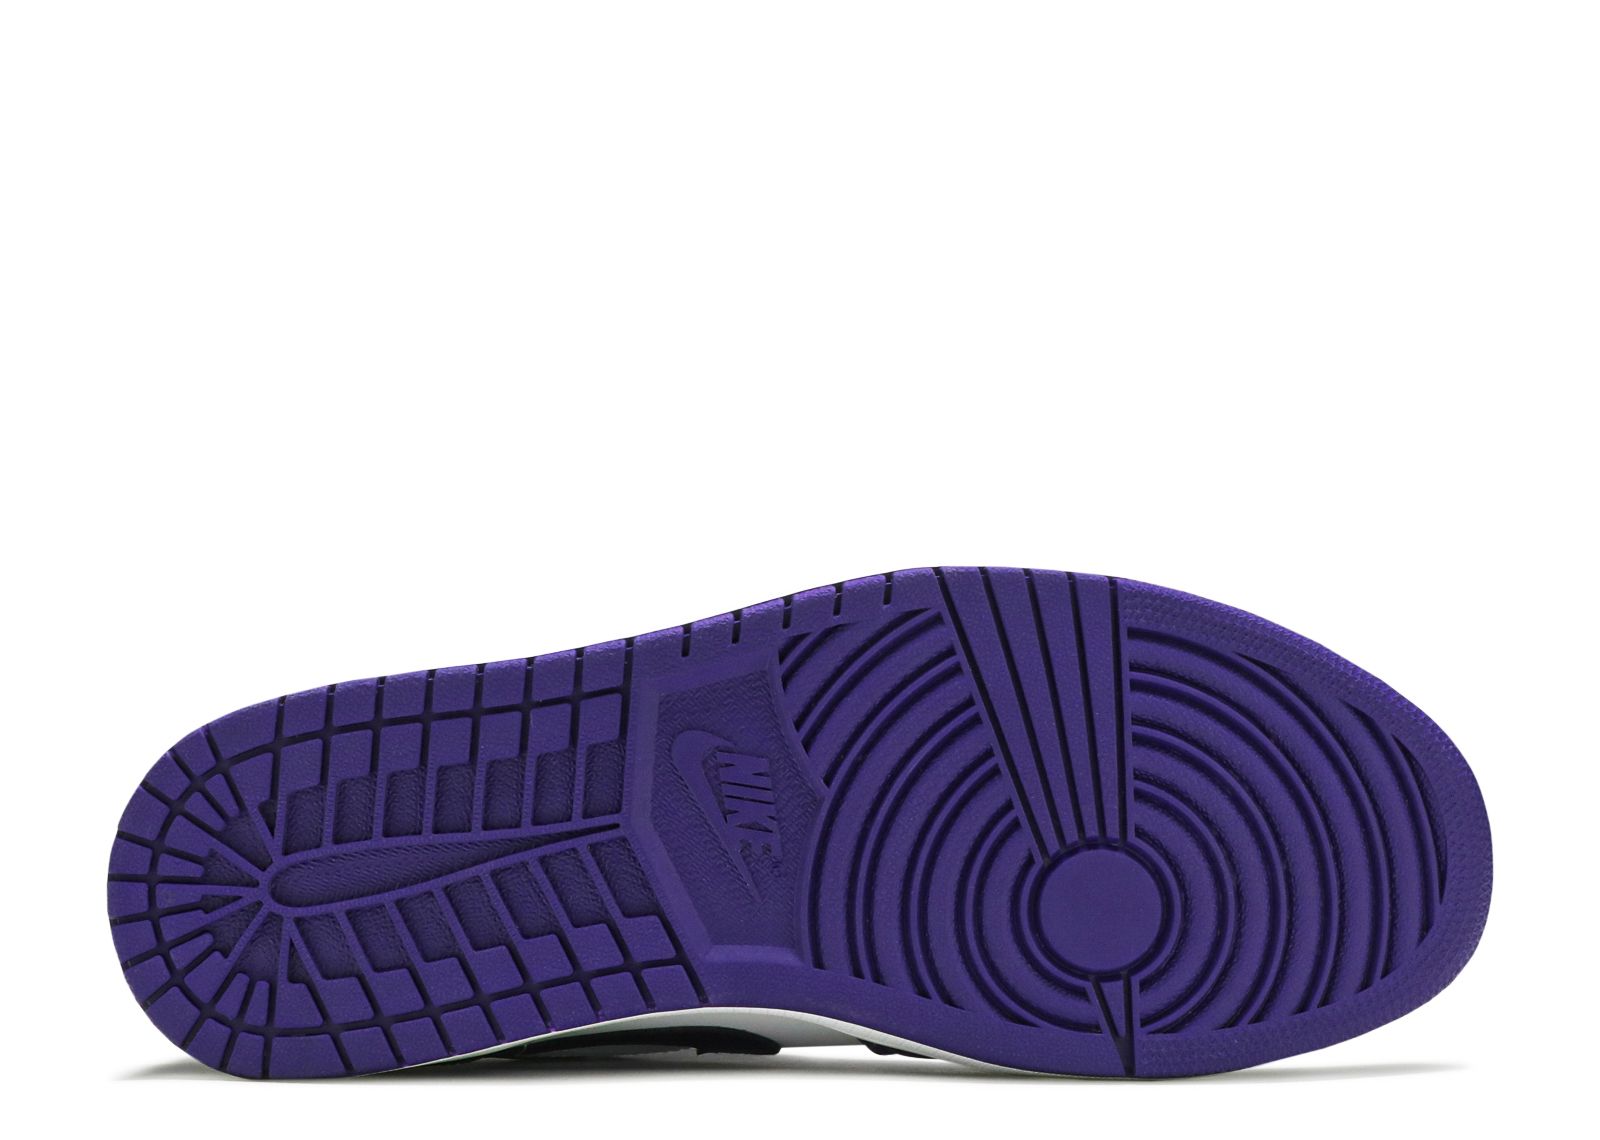 Air Jordan 1 Low 'Court Purple' - Air Jordan - 553558 500 - white 